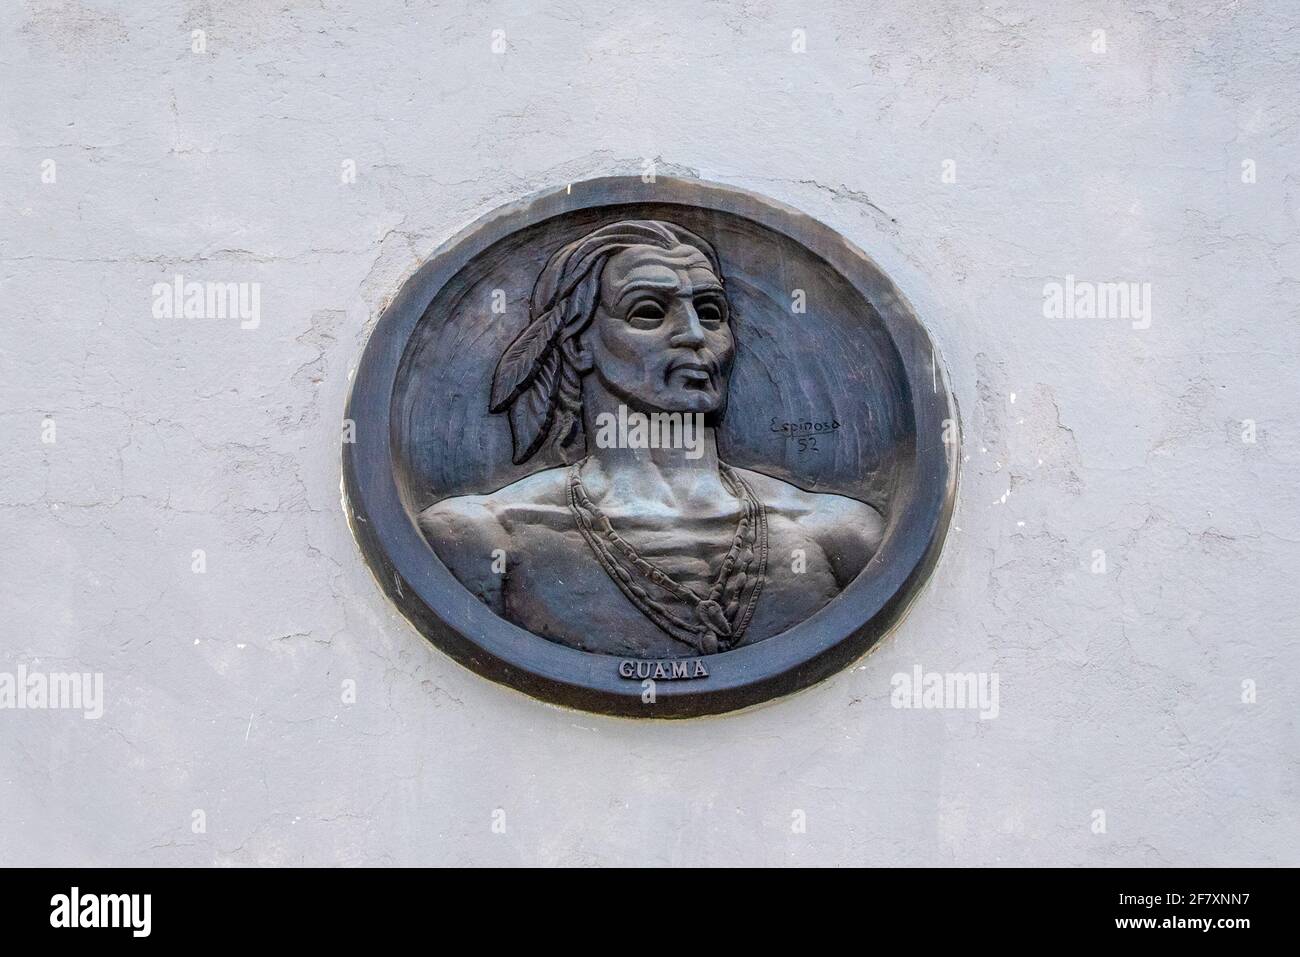 Sculpture of Indian leader 'Guama' in Santiago de Cuba, Cuba Stock Photo